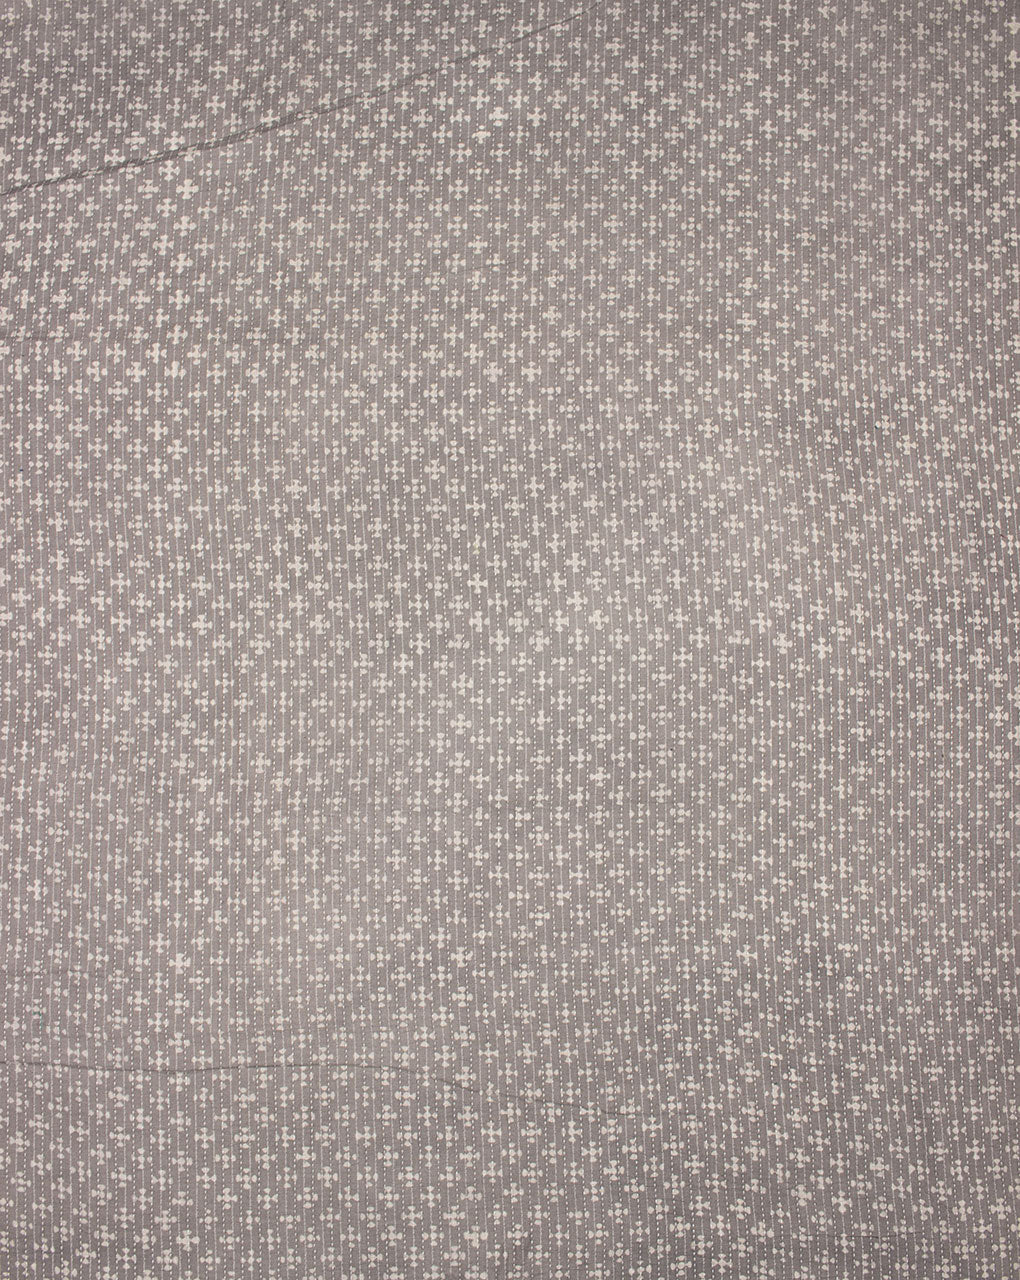 Geometric Akola Hand Block Kantha Cotton Fabric - Fabriclore.com